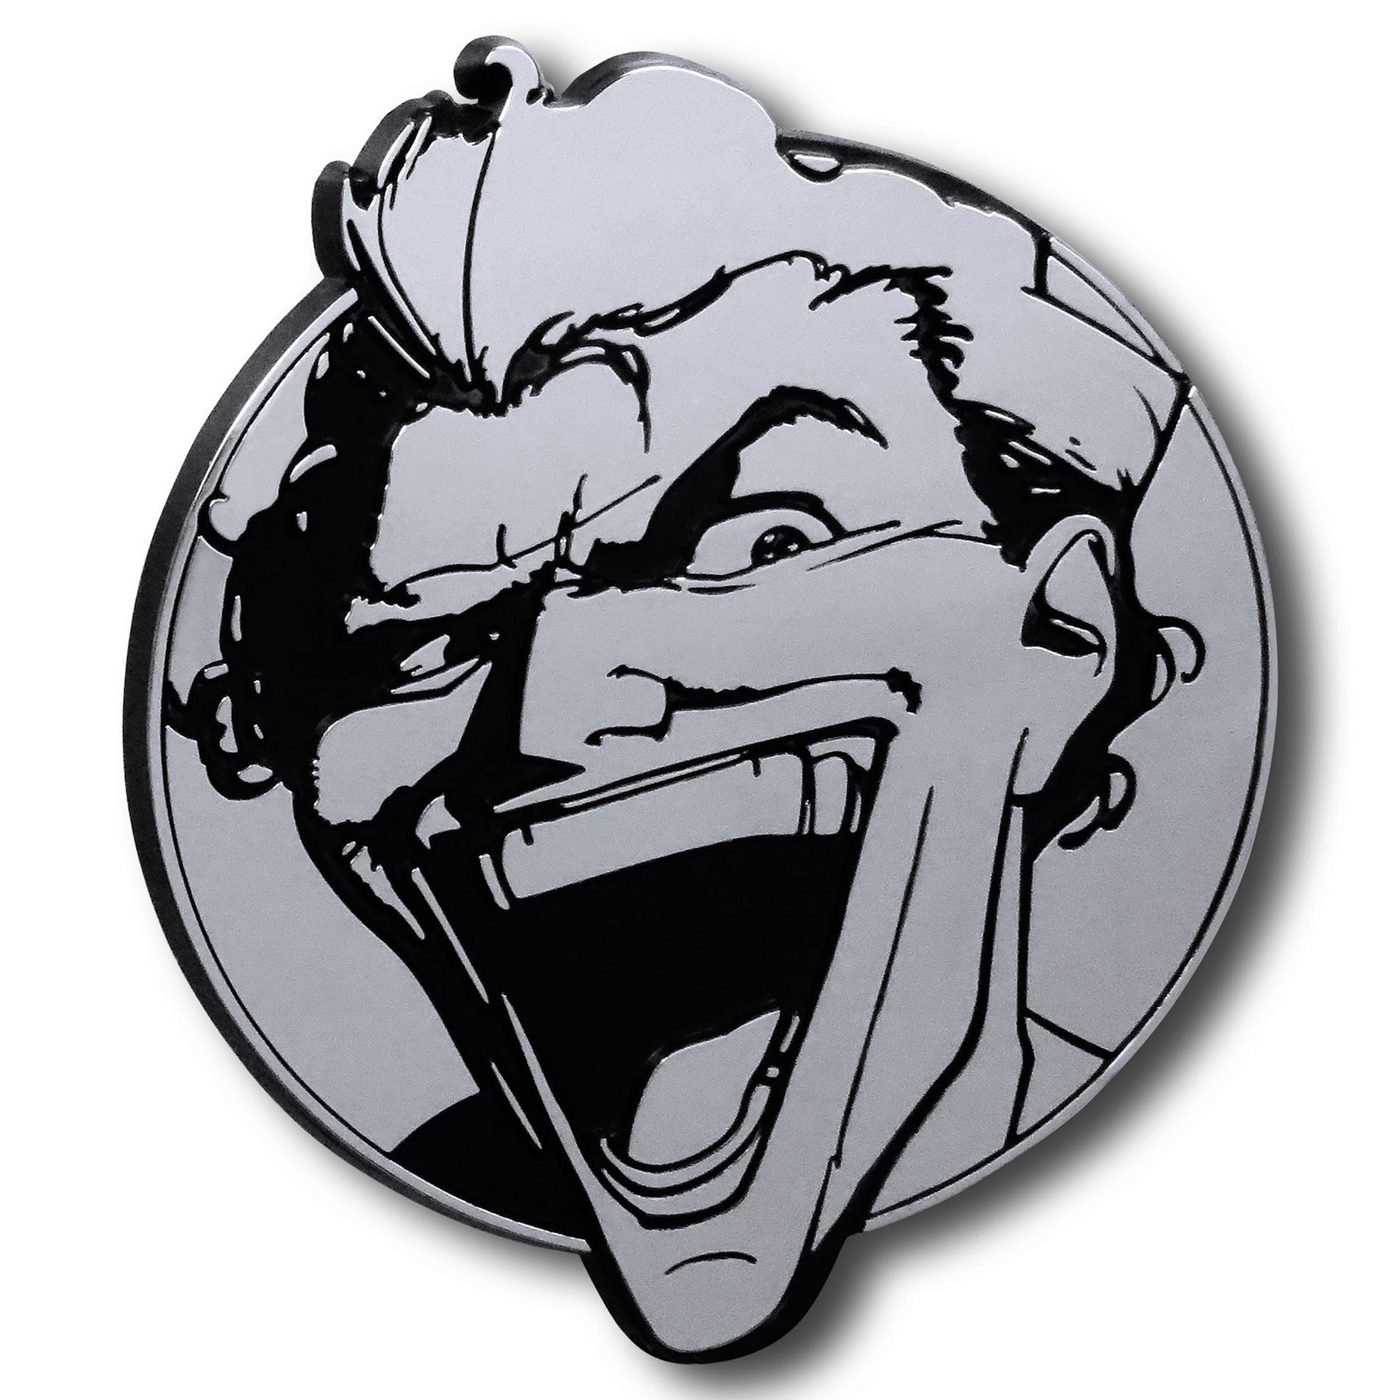 Joker Laugh 3D Plastic Car Emblem